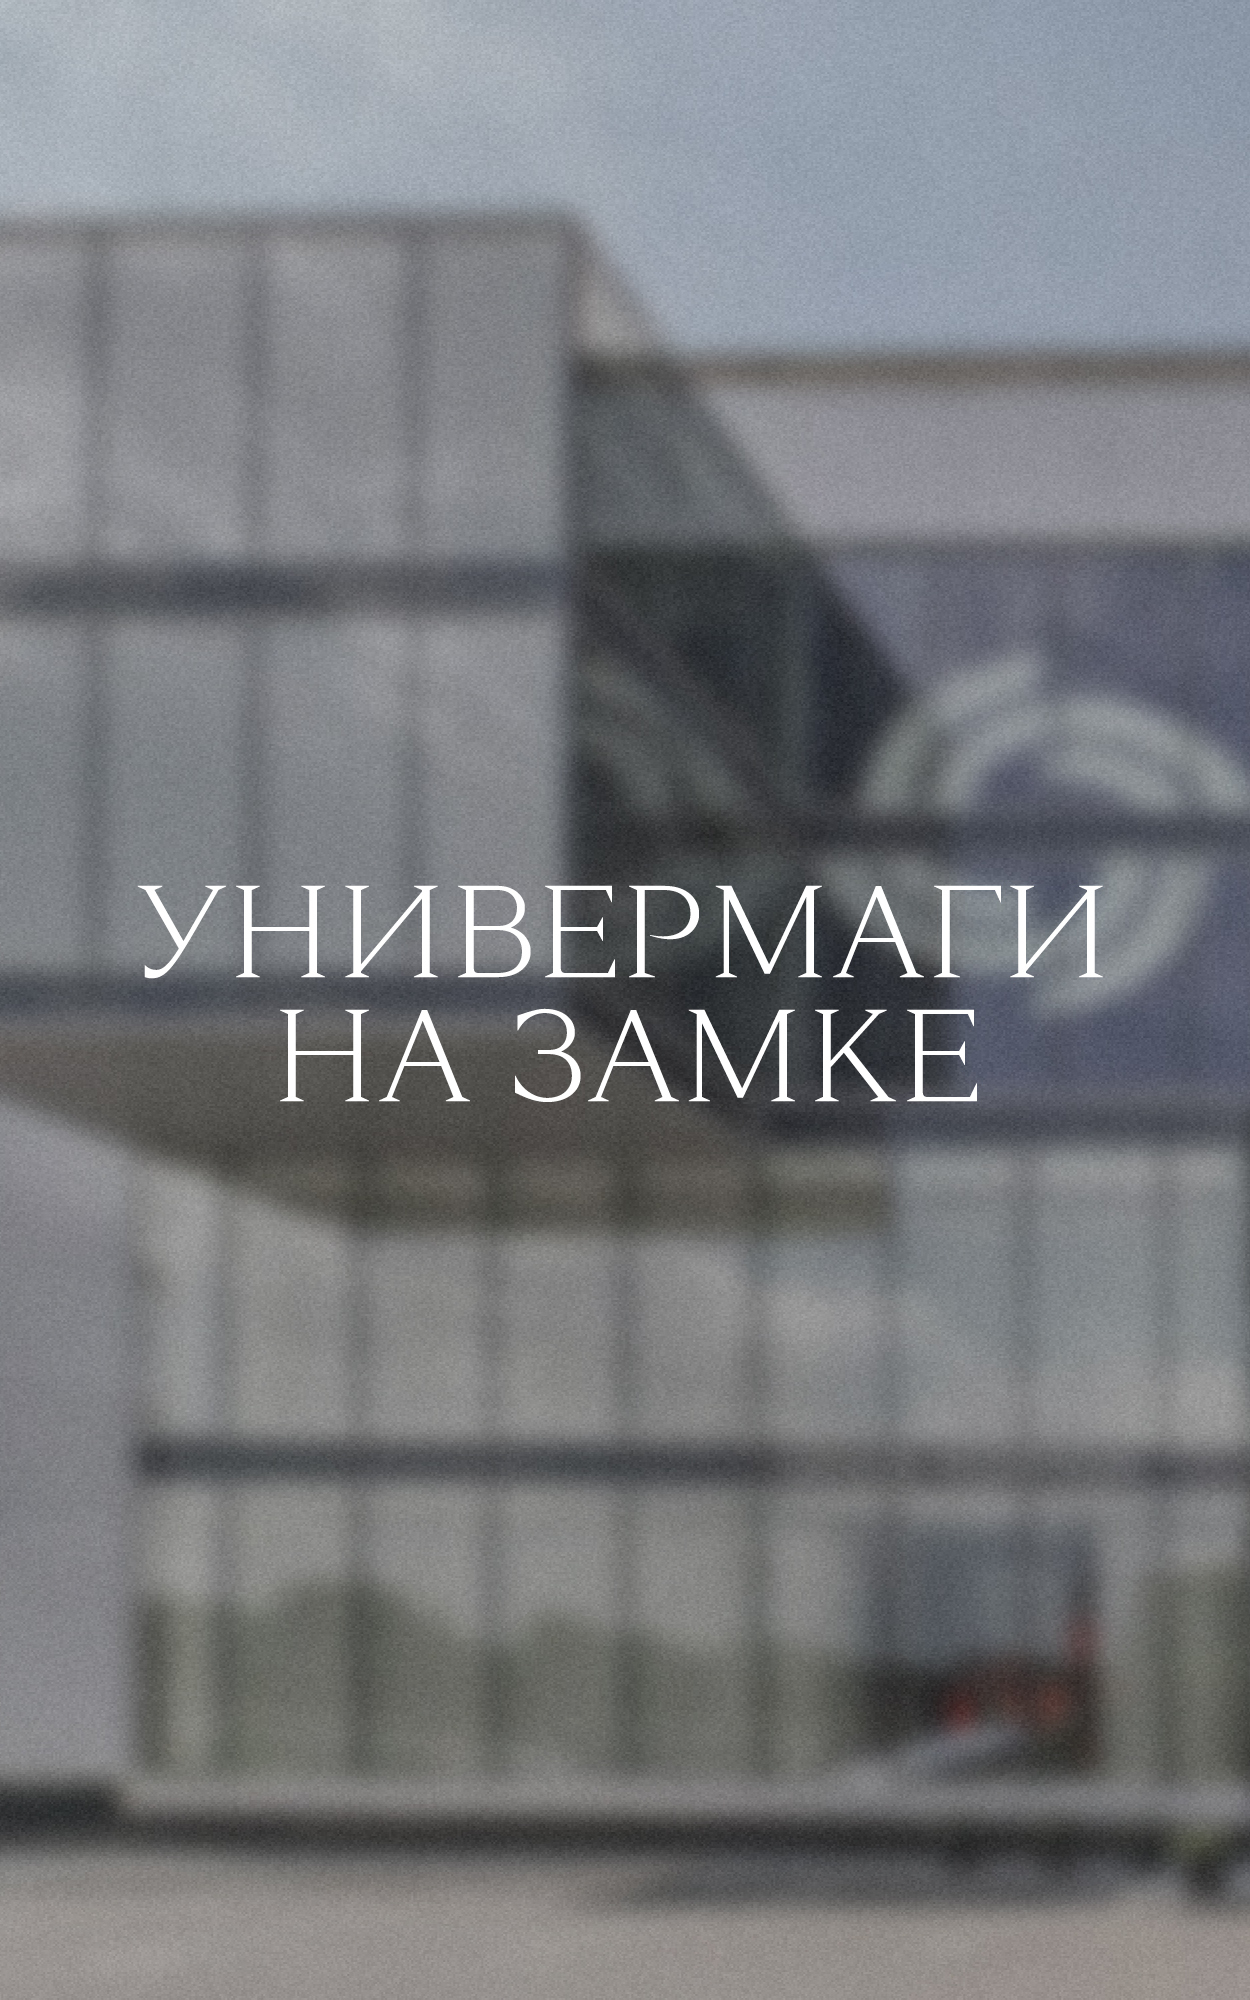 Neiman Marcus и Saks Fifth Avenue пали жертвой пандемии. Выживут ли московские универмаги?